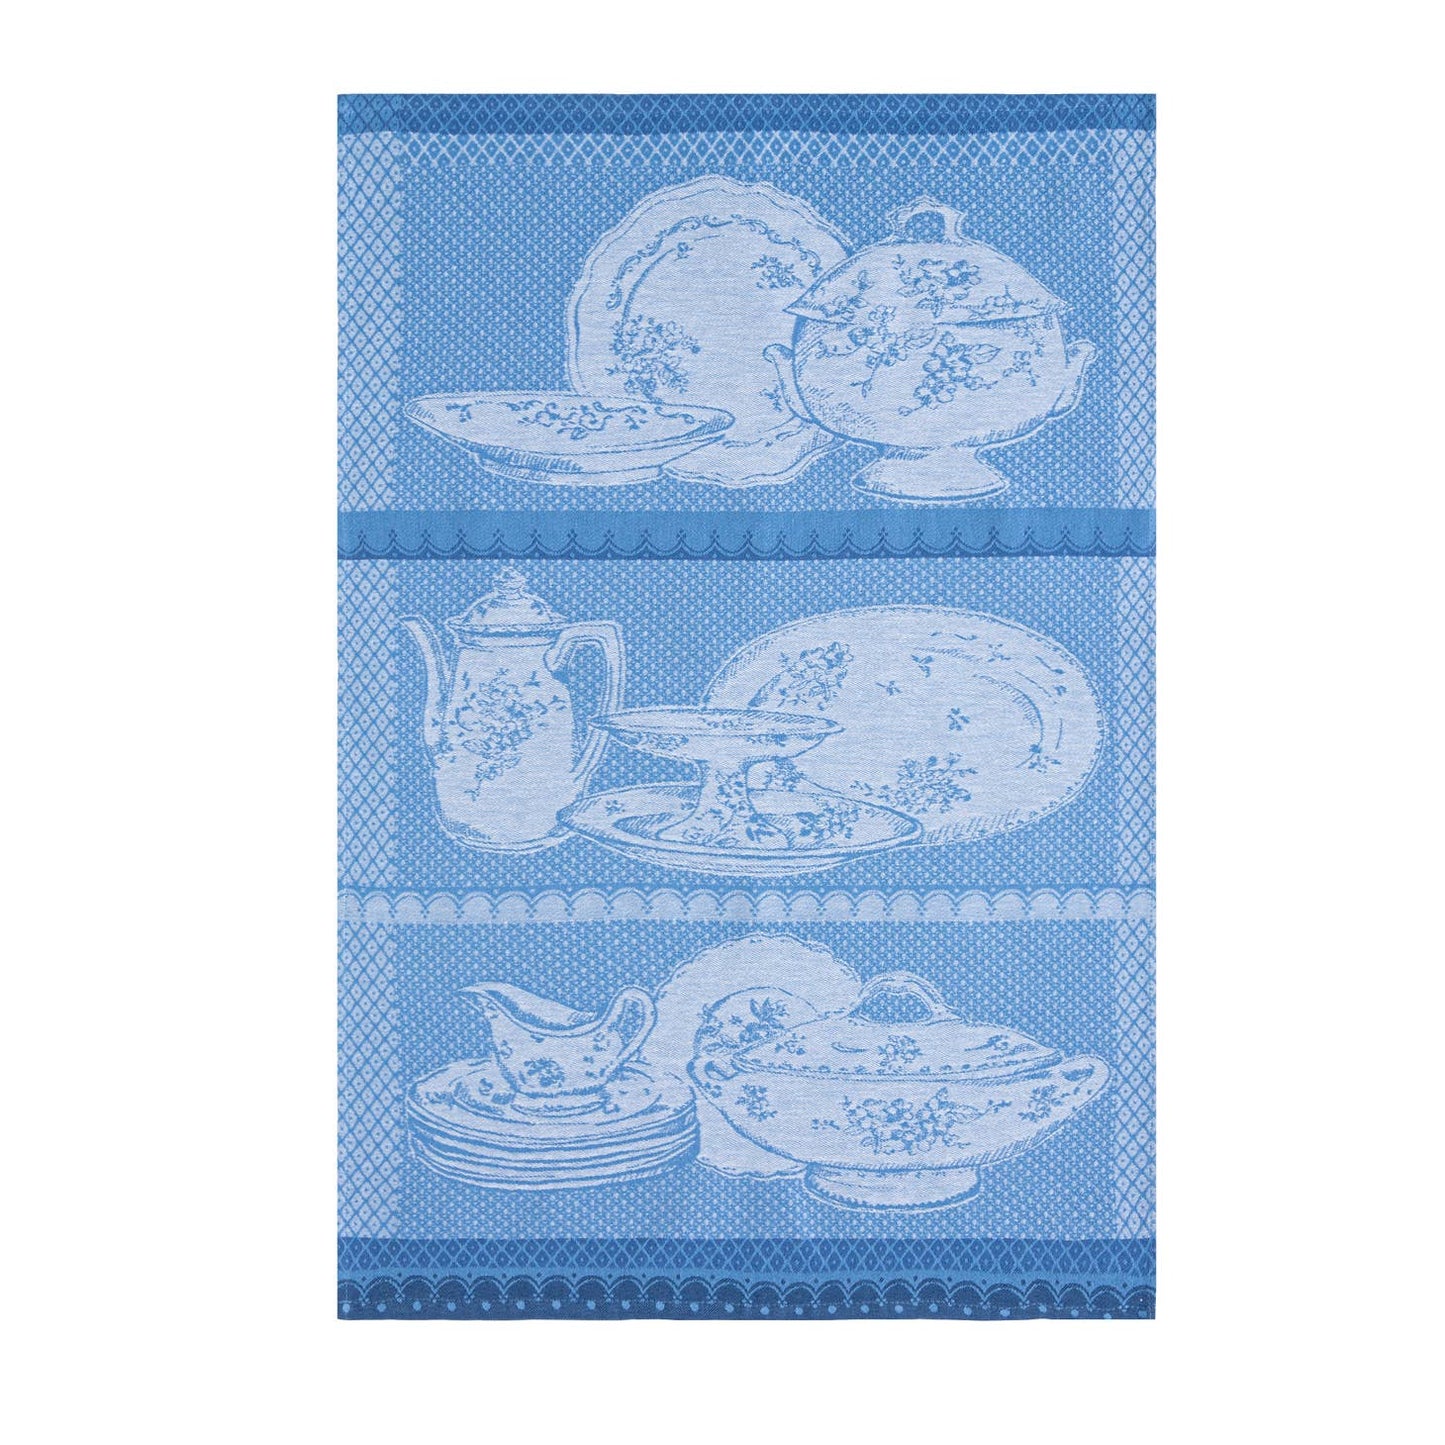 Antique Dinnerware - Jacquard Tea Towel in Cotton